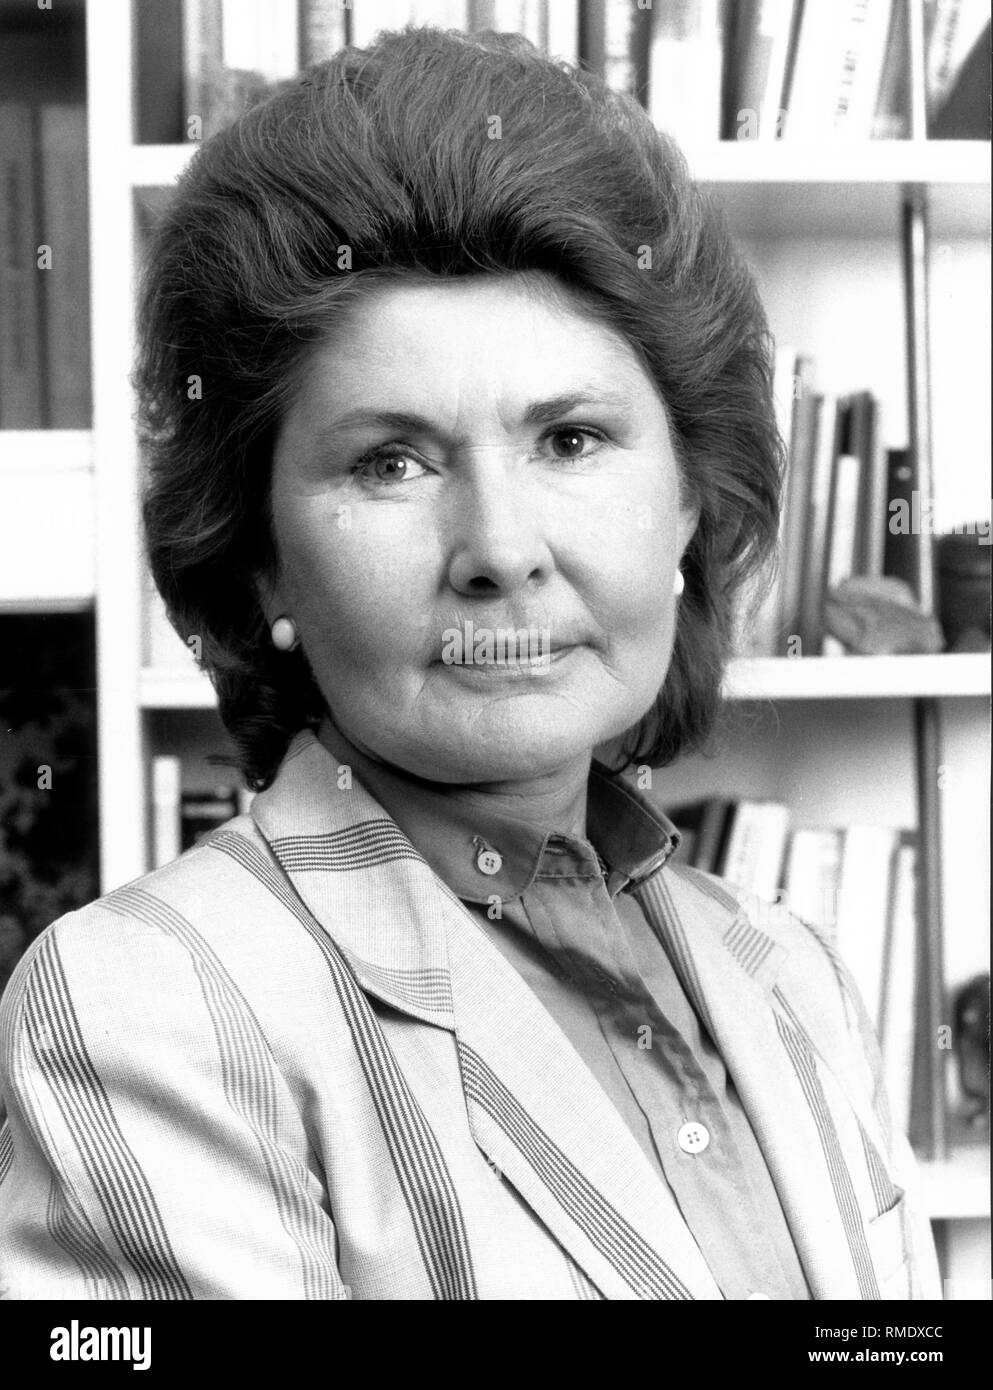 Ingrid Schoenhuber candidated im Jahr 1990 für das Amt des Bürgermeisters von München. Die Frau von der Bundesvorsitzende der Republikaner, Franz Schoenhuber, ist der Spitzenkandidat der Republikaner für die Bayerische Kommunalwahl im März 1990. Stockfoto